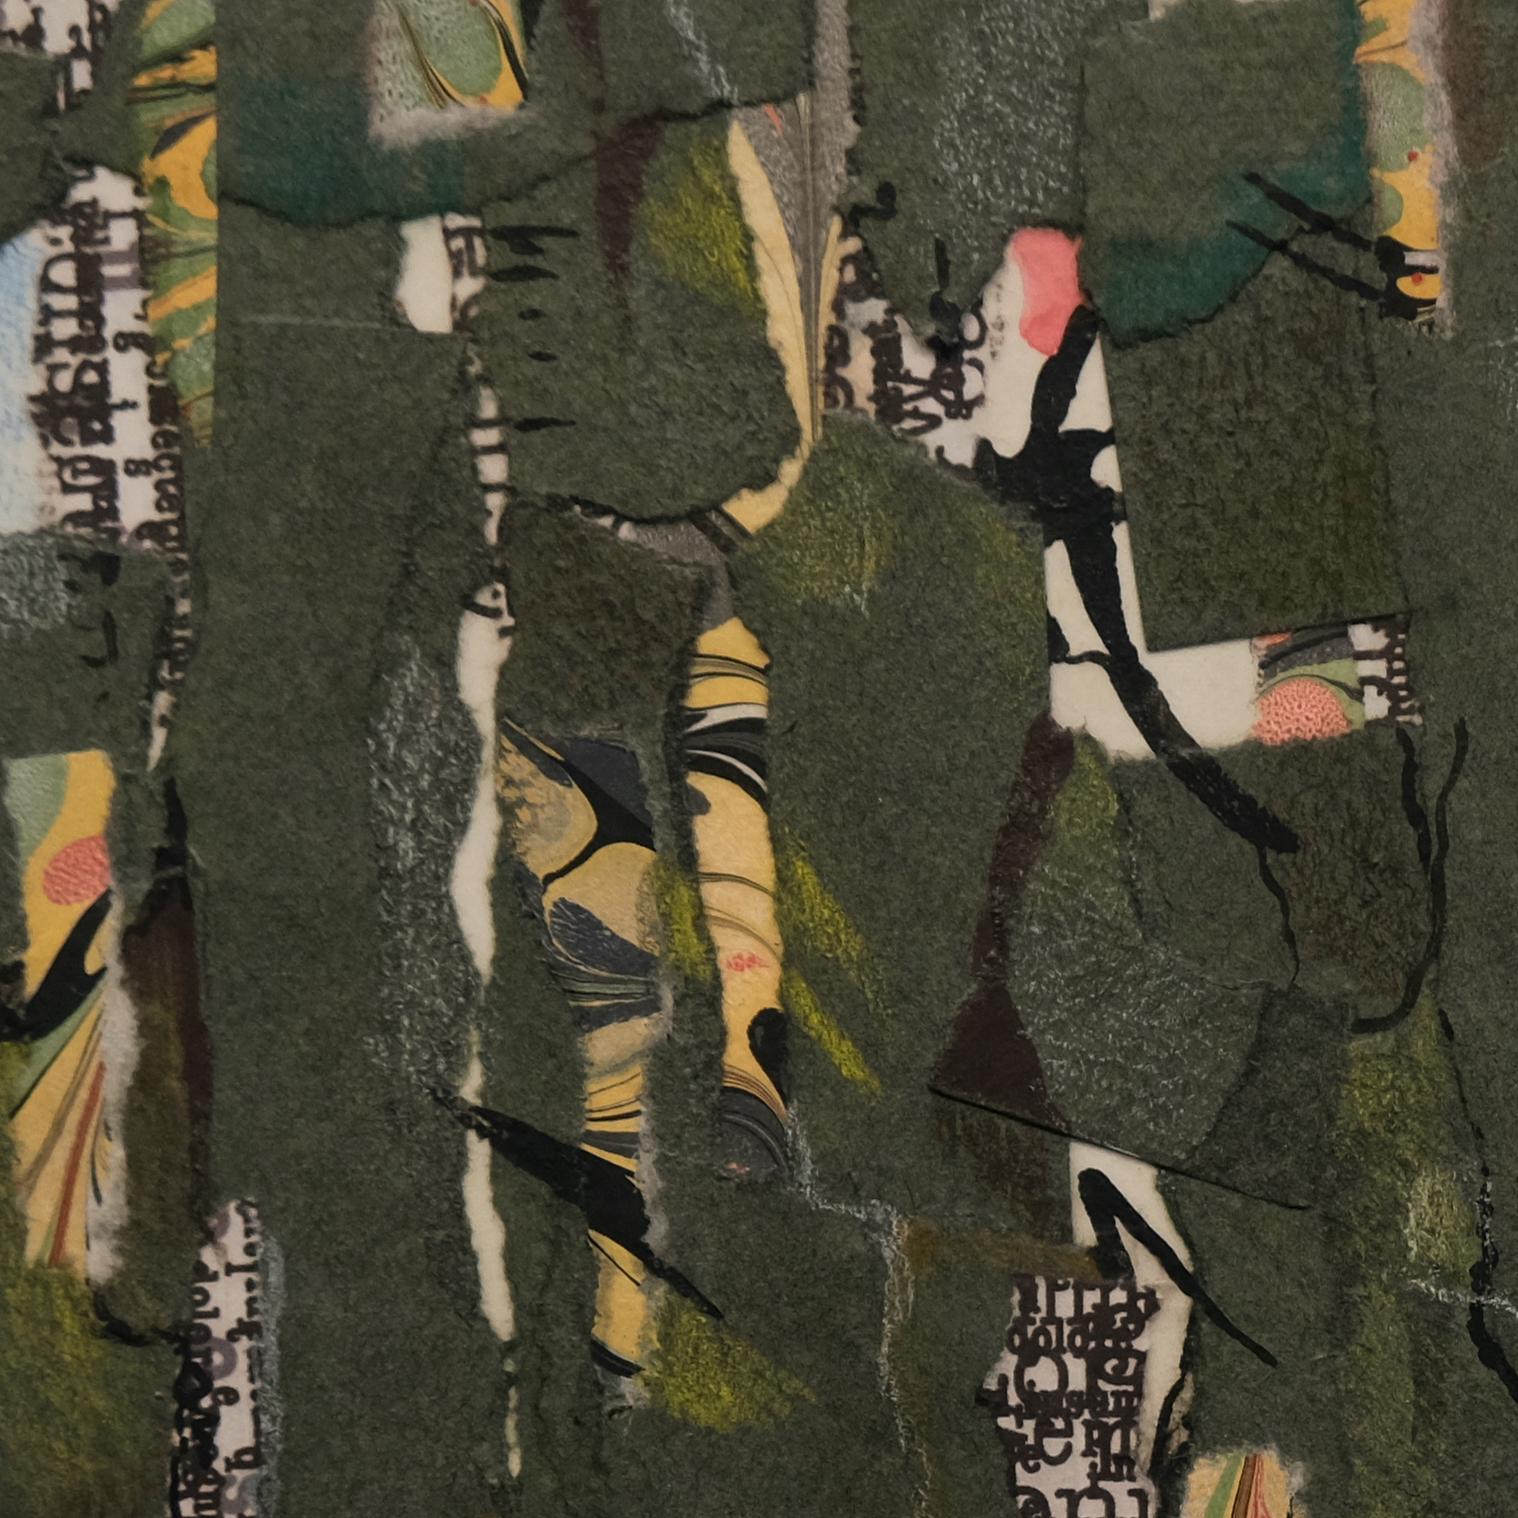 Abstrakte Collage von Iona Fromboluti.

Frombolutis Mischtechnik-Collagen sind wunderschöne abstrakte Kompositionen, die aus Formen bestehen, die sich überschneiden und miteinander interagieren. Die Künstlerin verwendet verschiedene Farben und deren